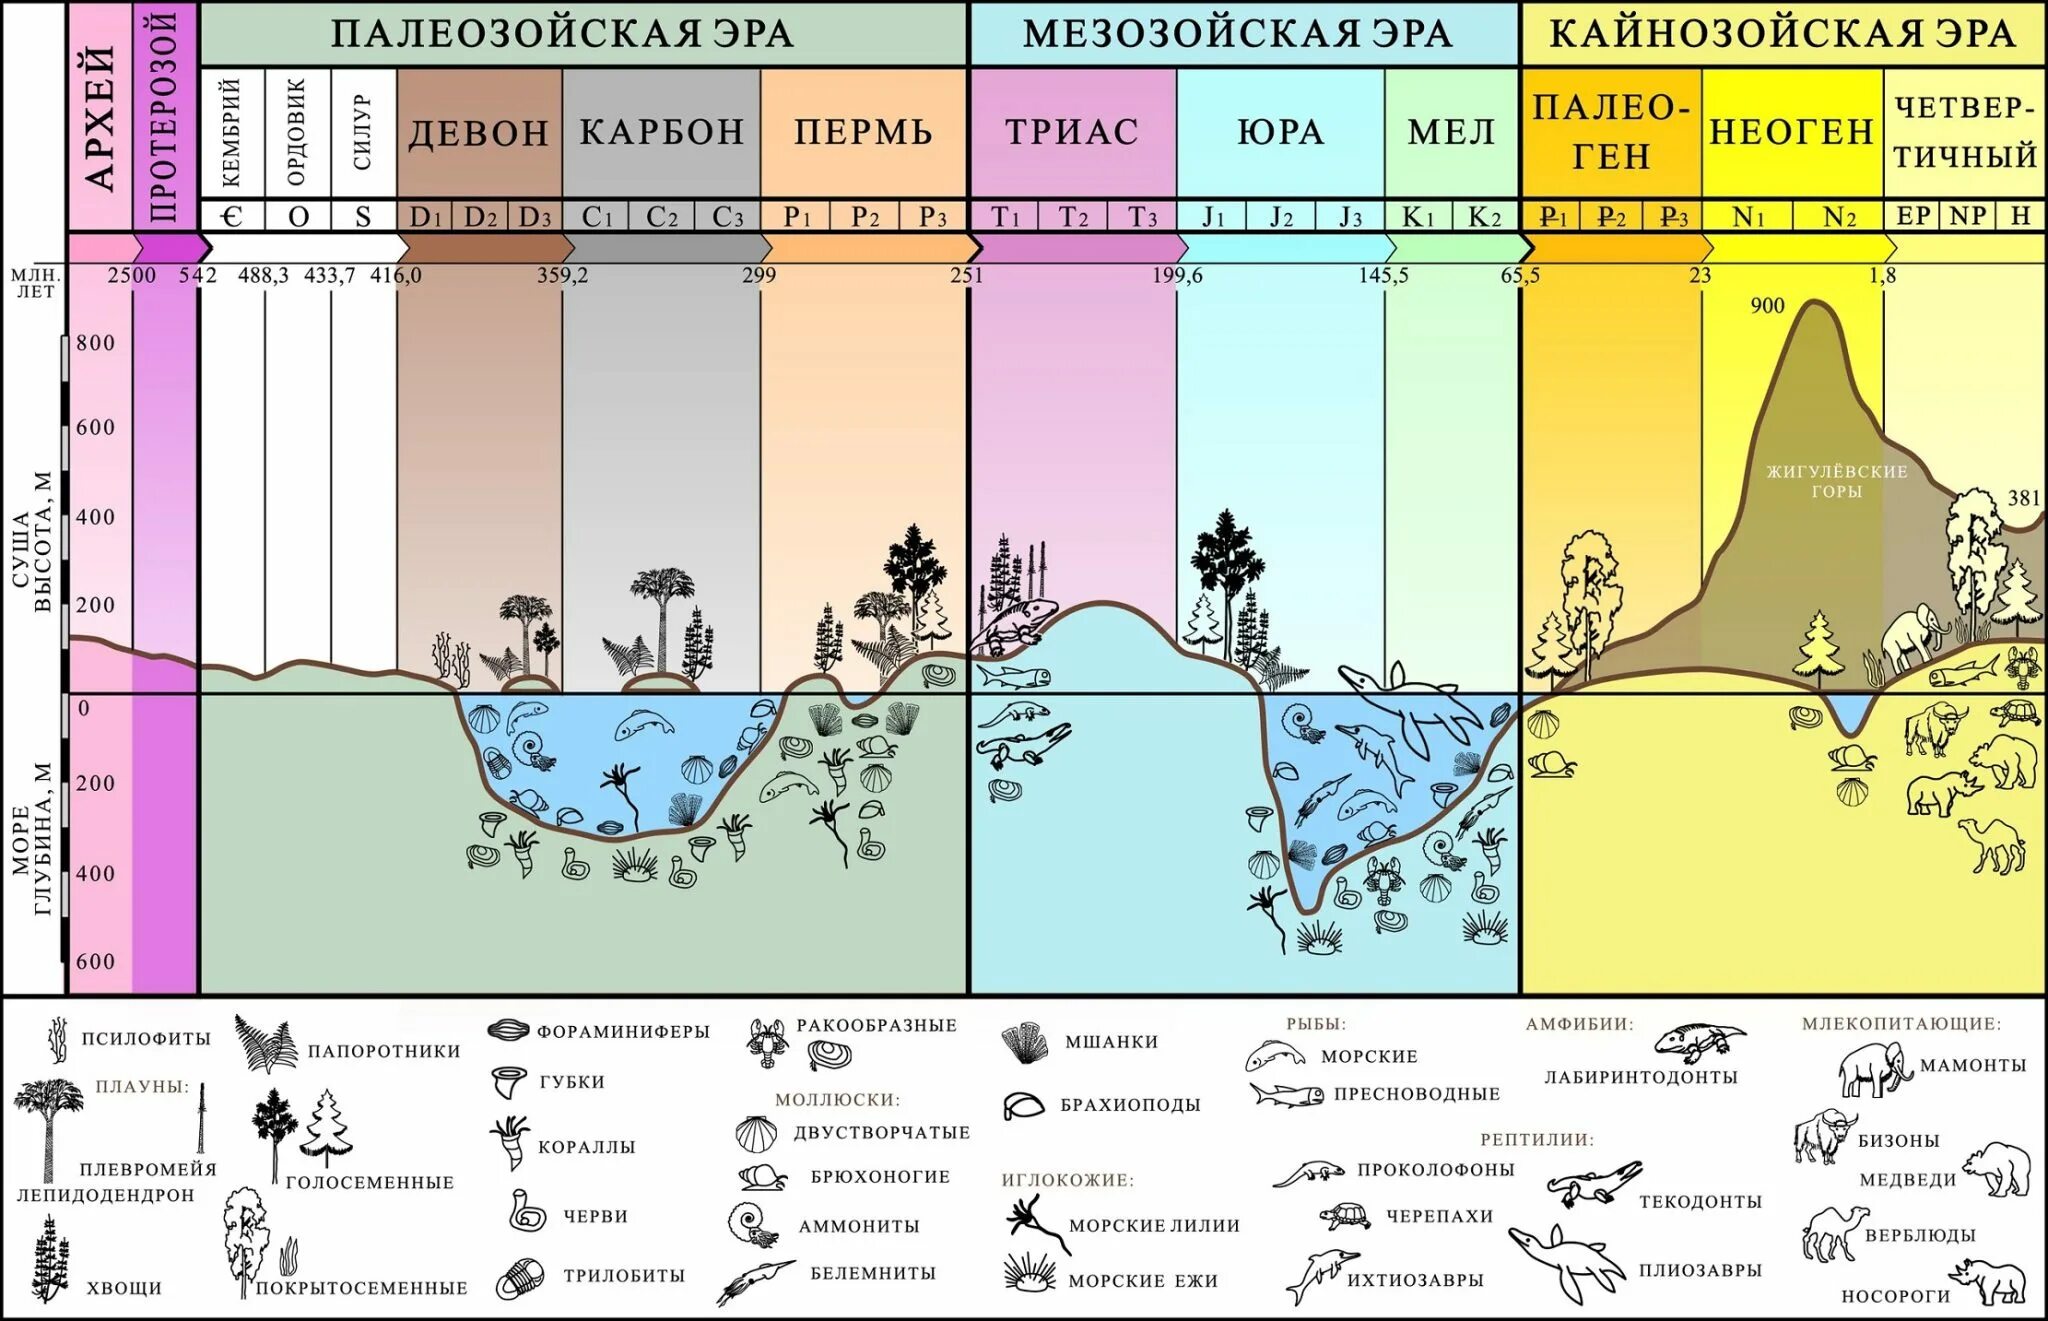 Динамика изменений в биосфере. Периоды развития земли в хронологическом порядке. Геологические этапы развития земли. Геологическая история земли в хронологическом порядке таблица. Эволюция биосферы эры и периоды.